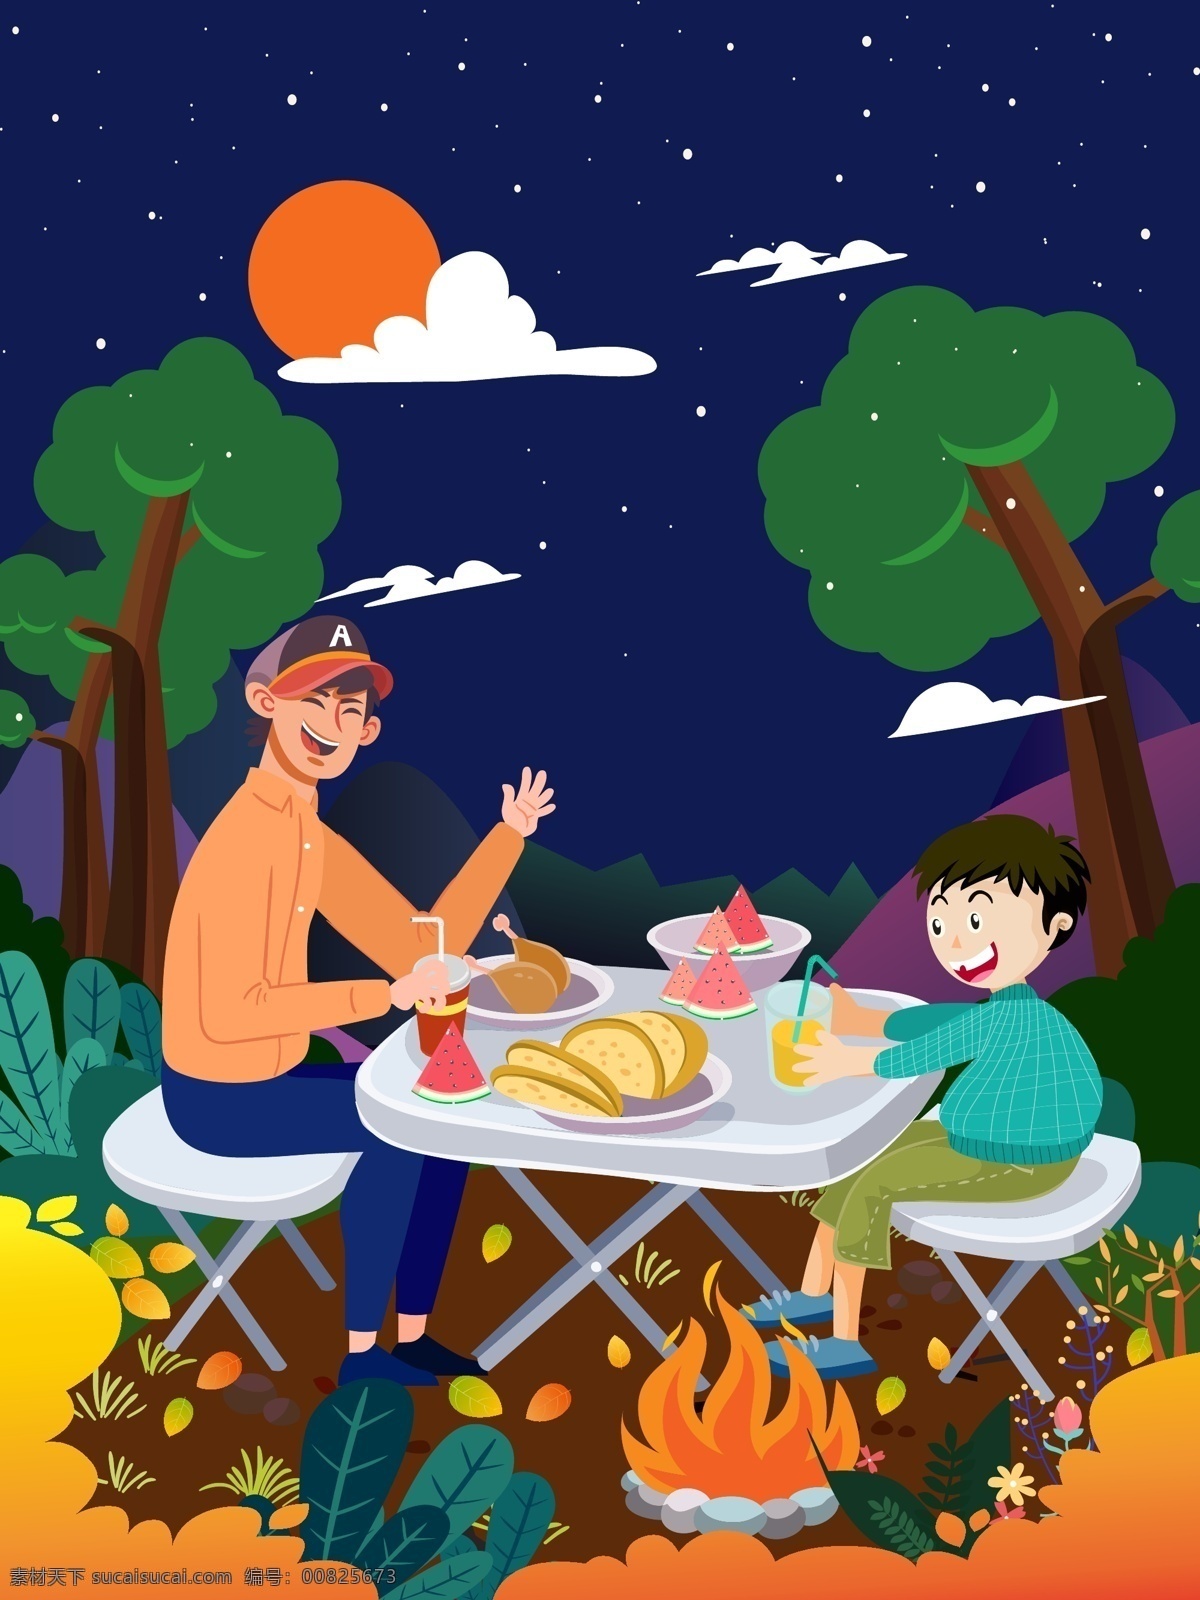 父亲节 父子 互动 野餐 郊游 活动 亲子活动 野外郊游 吃饭 夜晚